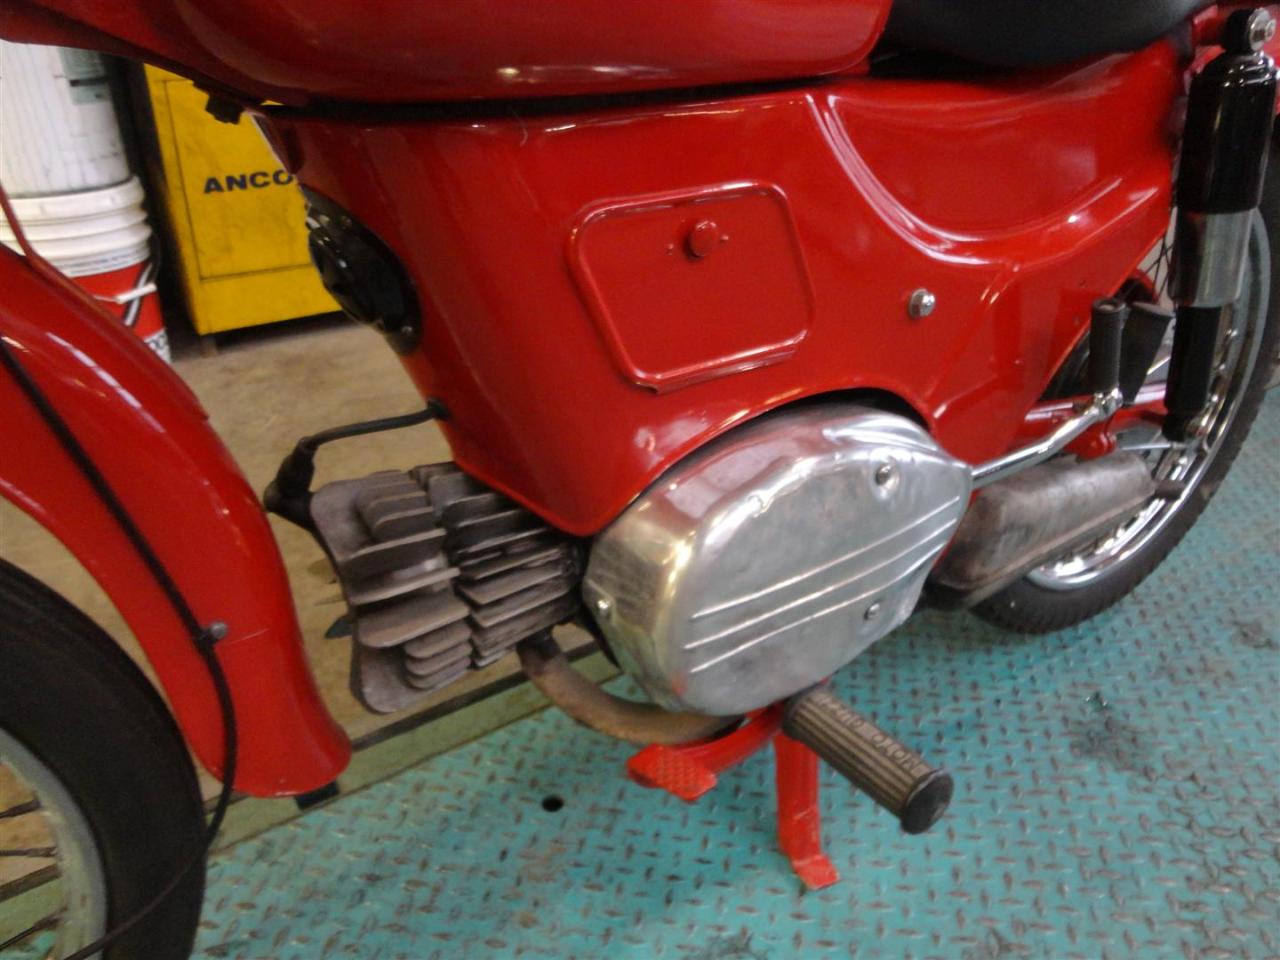 1963 Moto Guzzi Zigolo 110 CC 2 stroke